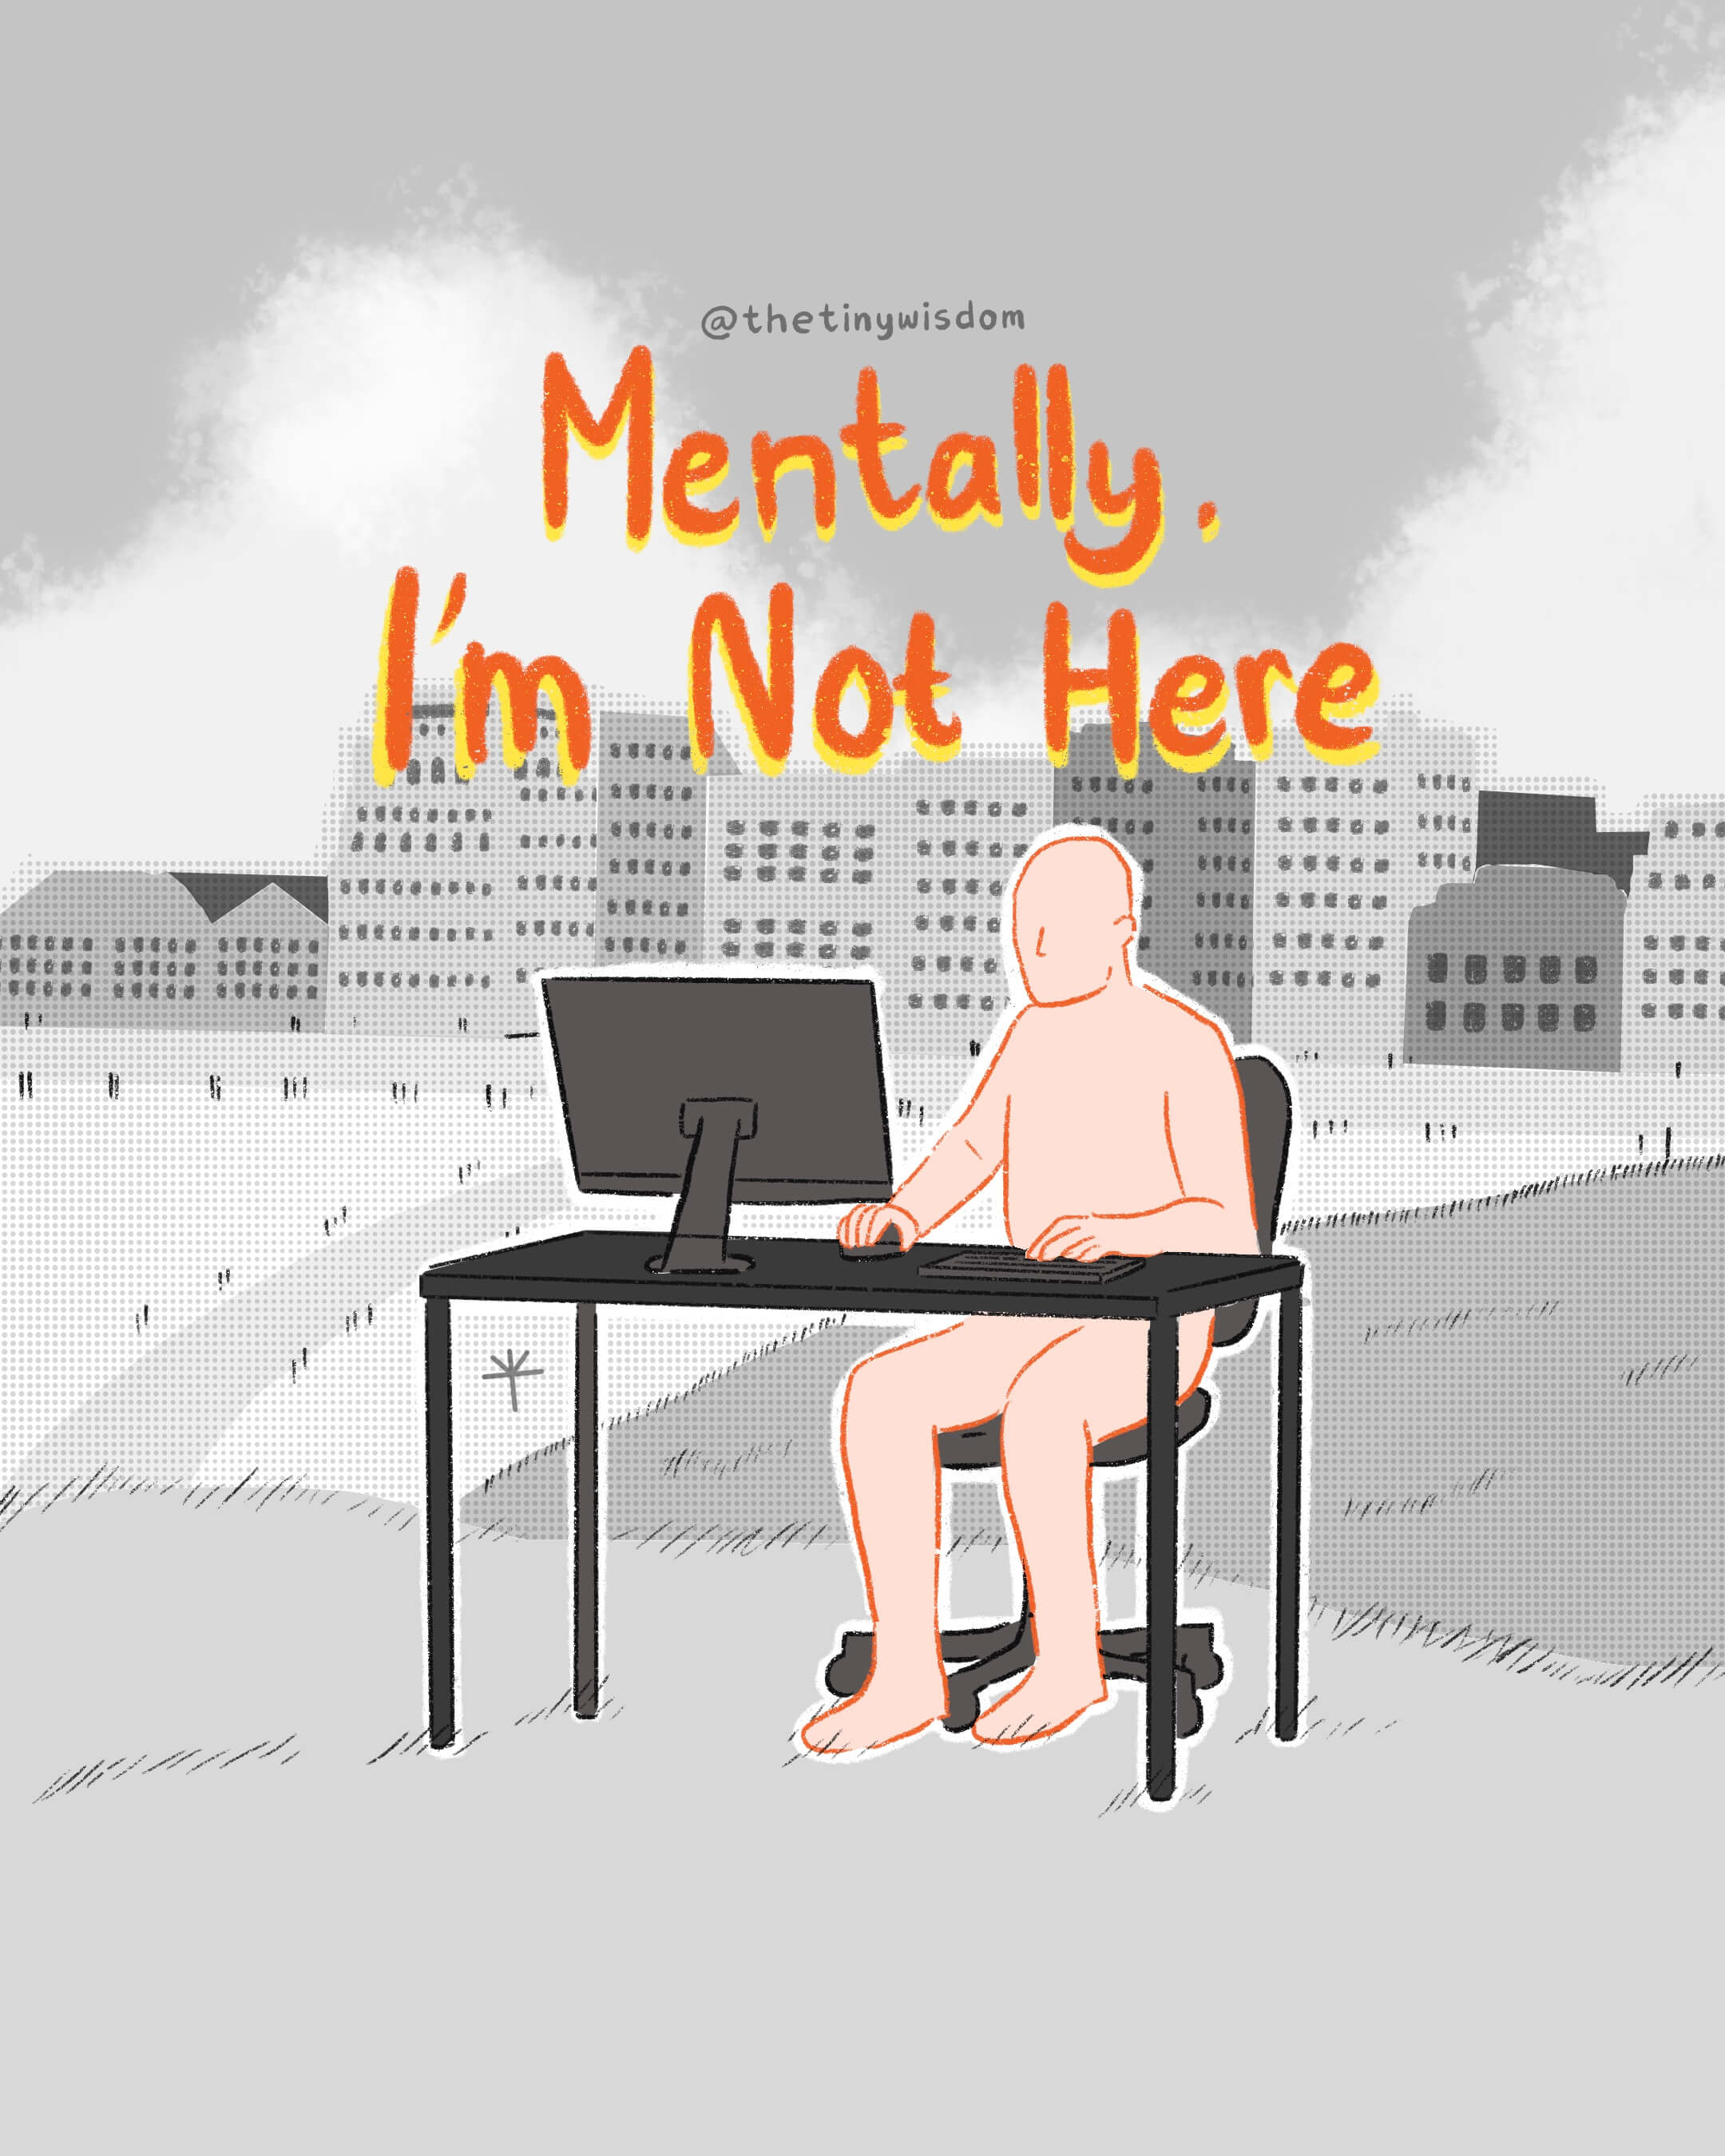 Mentally, I'm not here